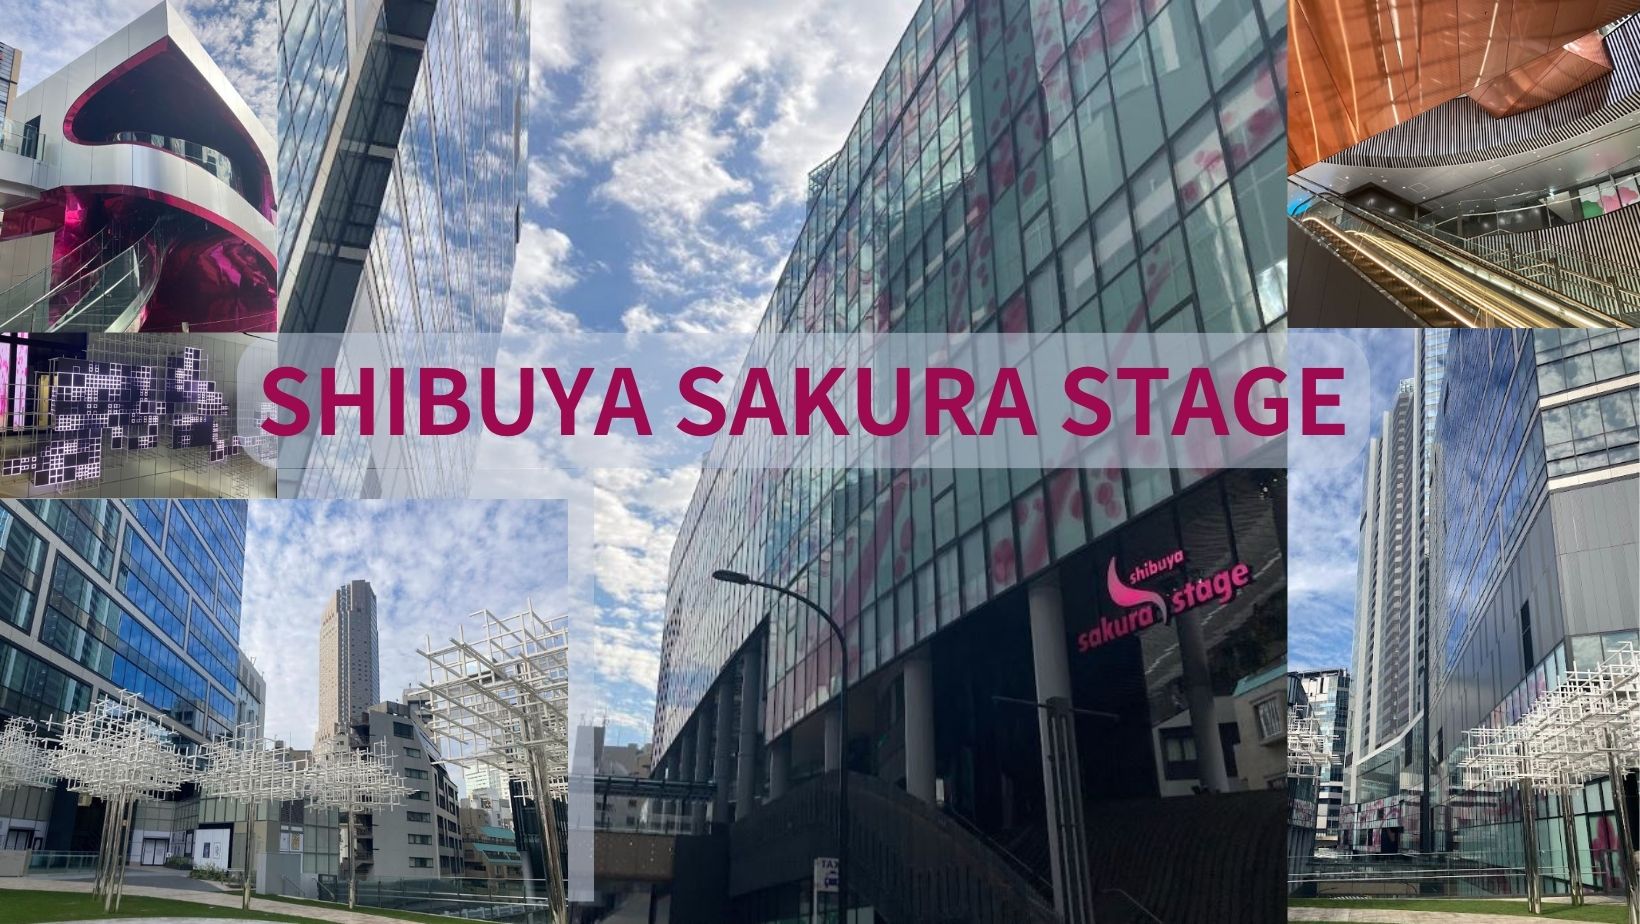 澀谷 Sakura Stage：新地標盛大開幕，澀谷經過一世紀後轉型性重建的里程碑！